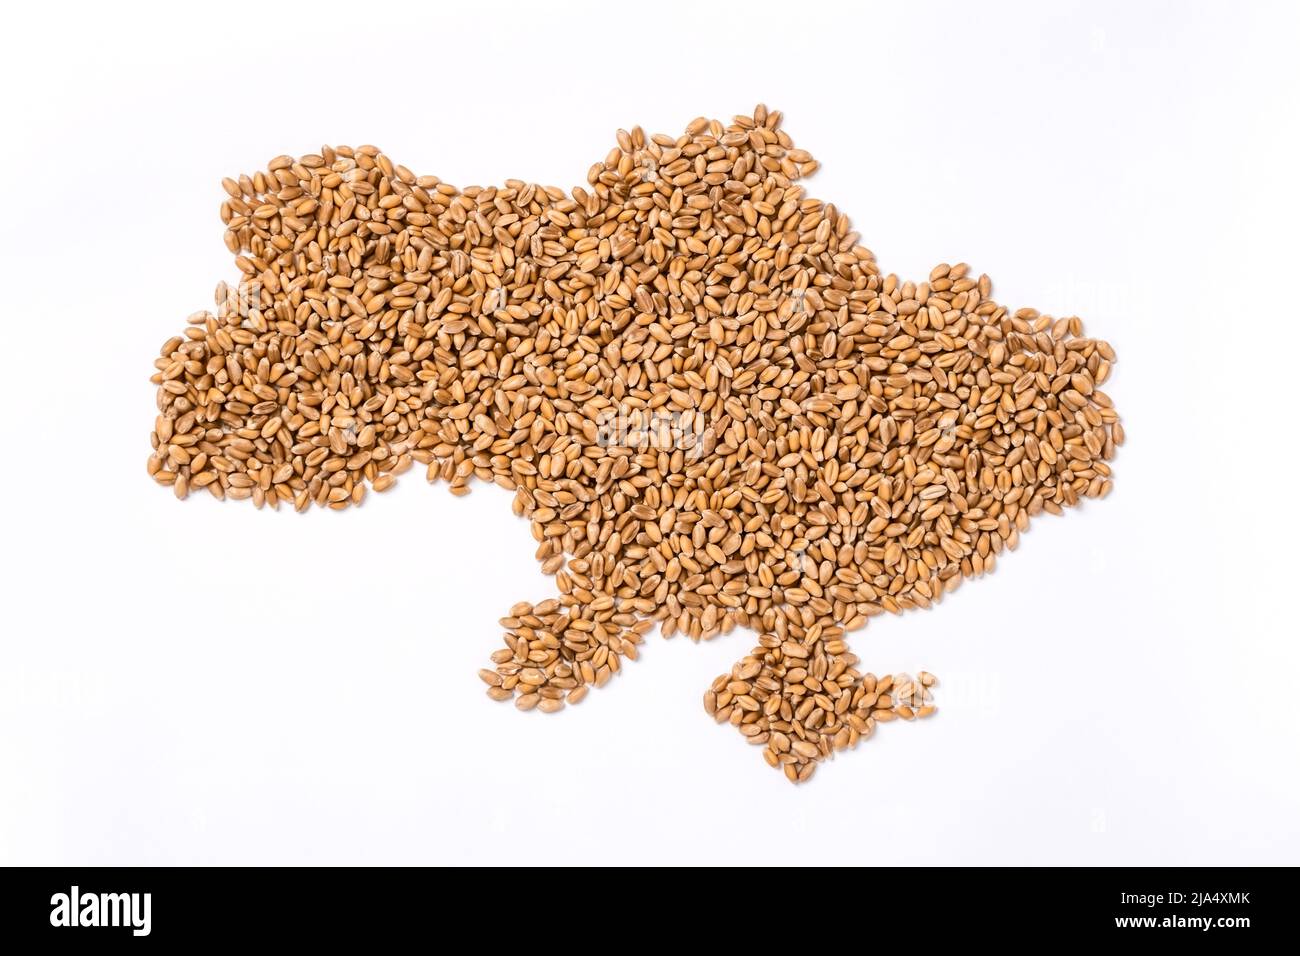 Mapa de Ucrania hecho de granos de trigo como principal país exportador de cereales en Europa. Concepto de la crisis del suministro de alimentos y la escasez mundial de alimentos y el hambre porque Foto de stock